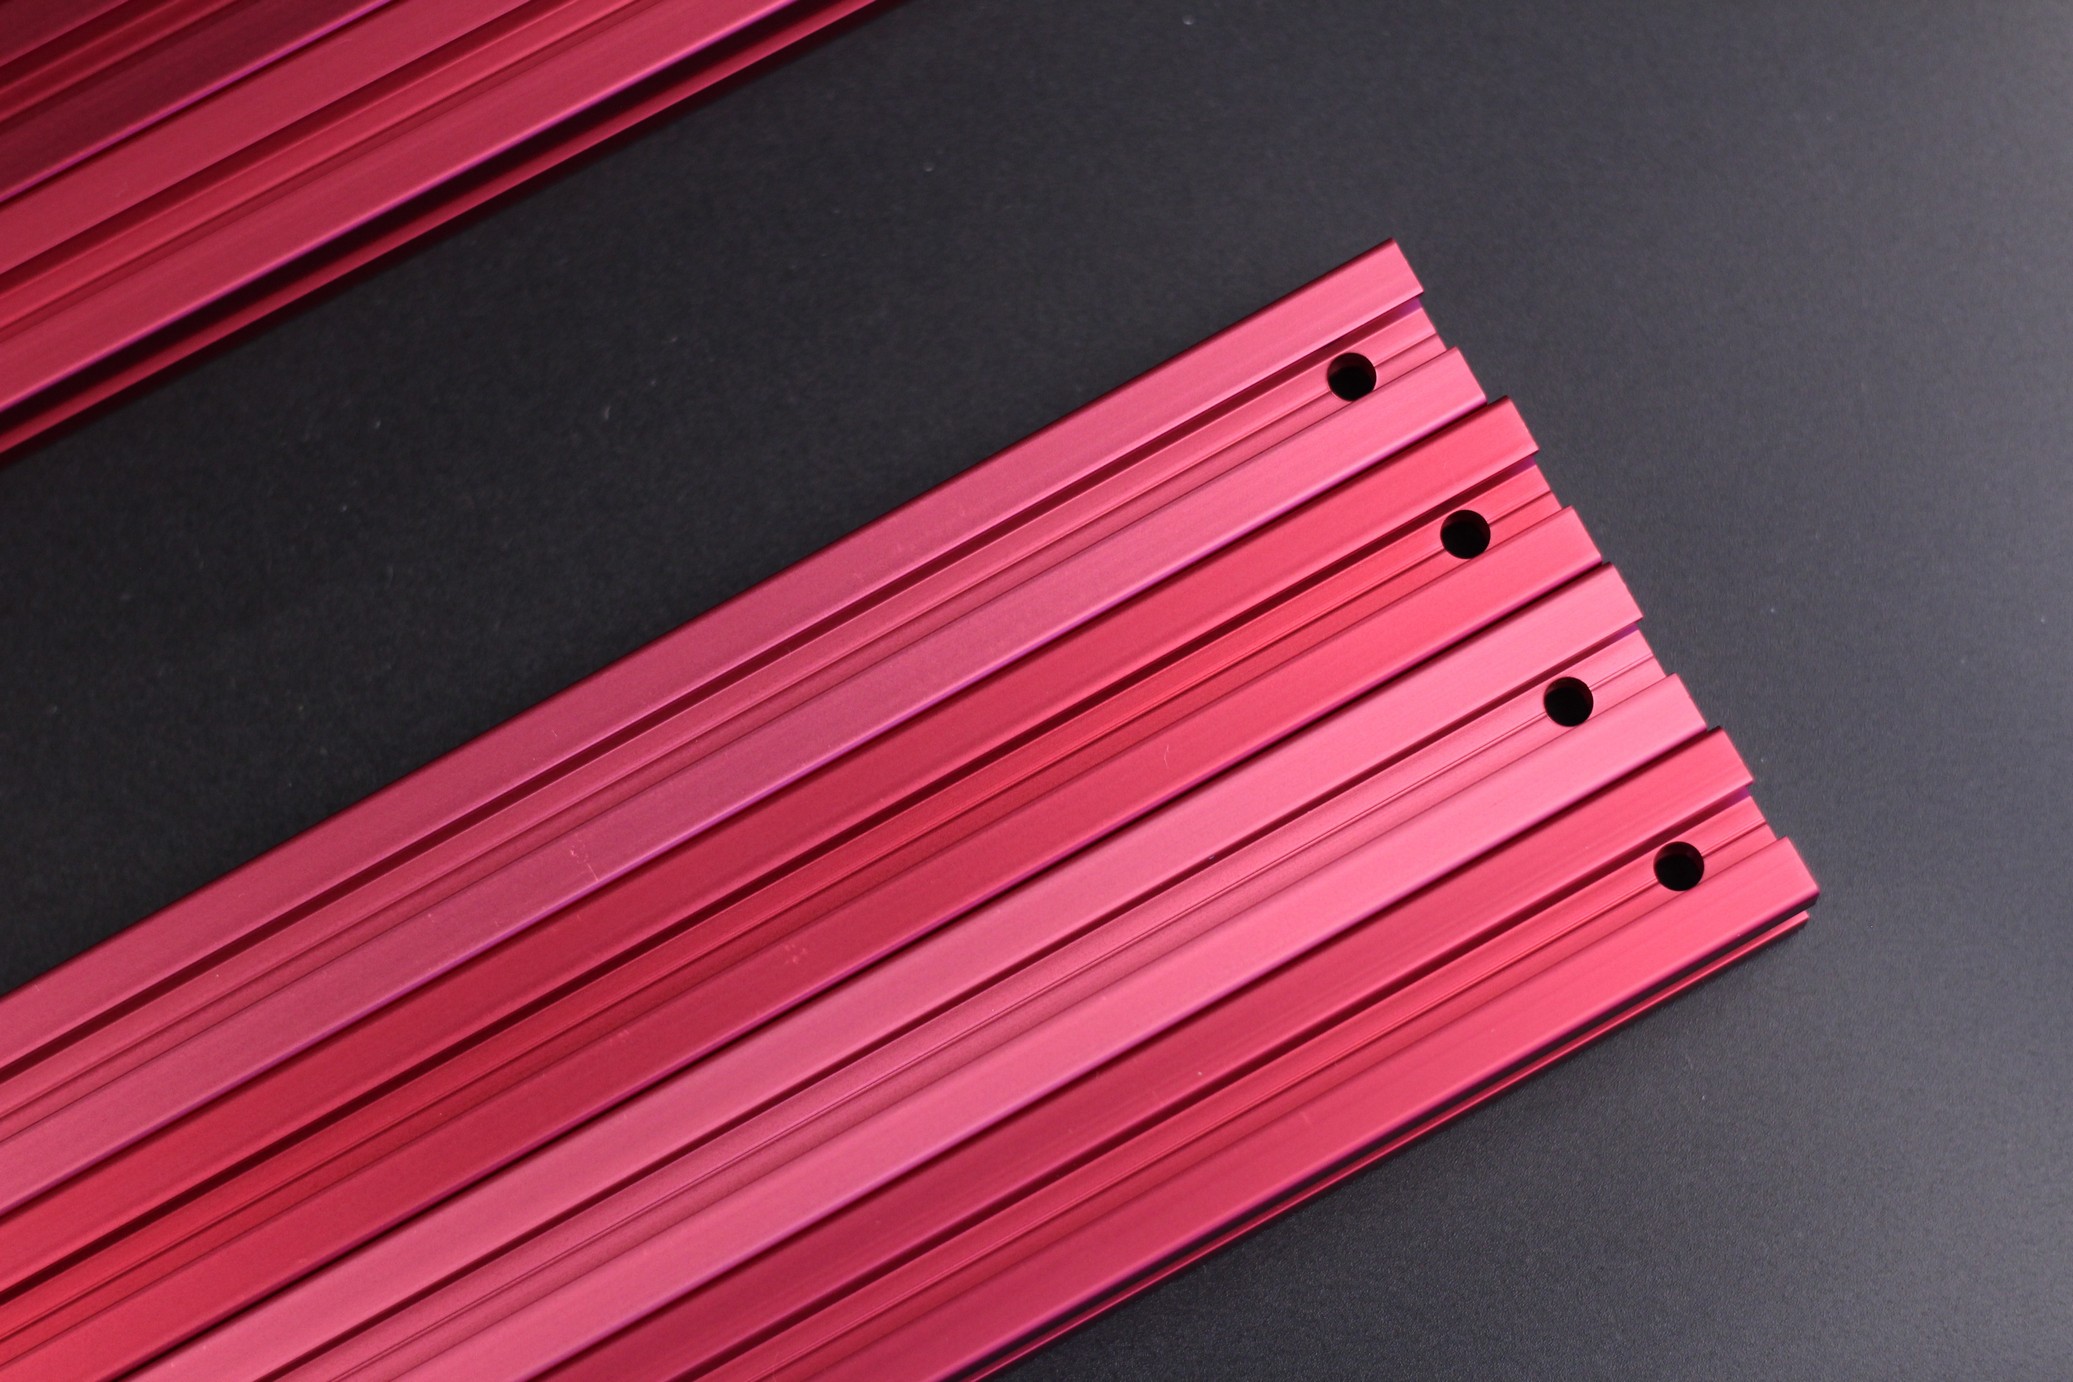 FYSETC Voron Trident Kit Red Anodized Aluminum Profiles 2 | VORON Trident FYSETC Kit Review: Is it worth it?